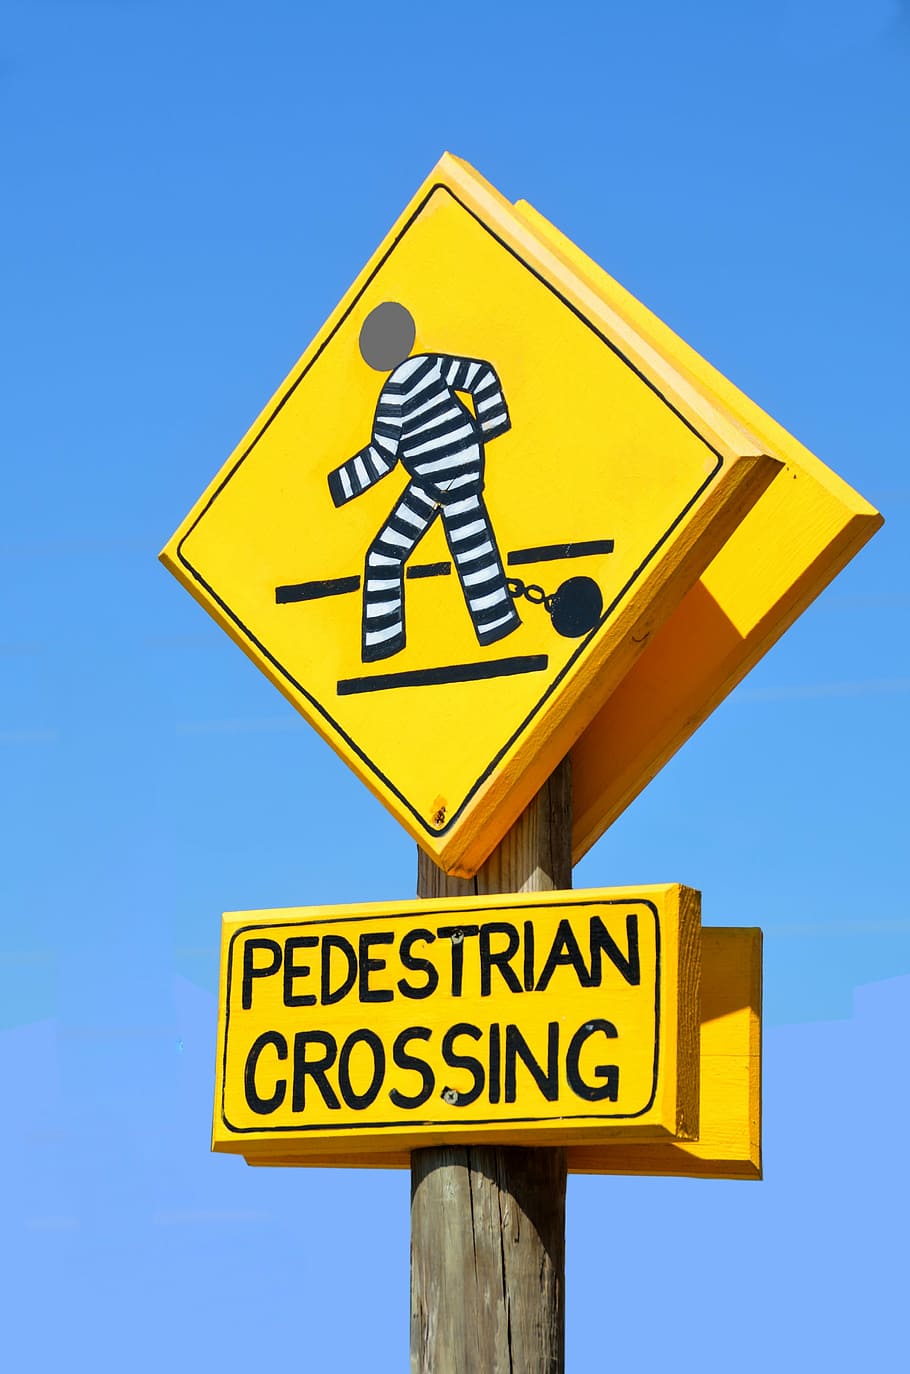 signo de cruce de peatones, al aire libre, símbolo, advertencia, seguridad, carretera, signo, peatonal, cruce, calle